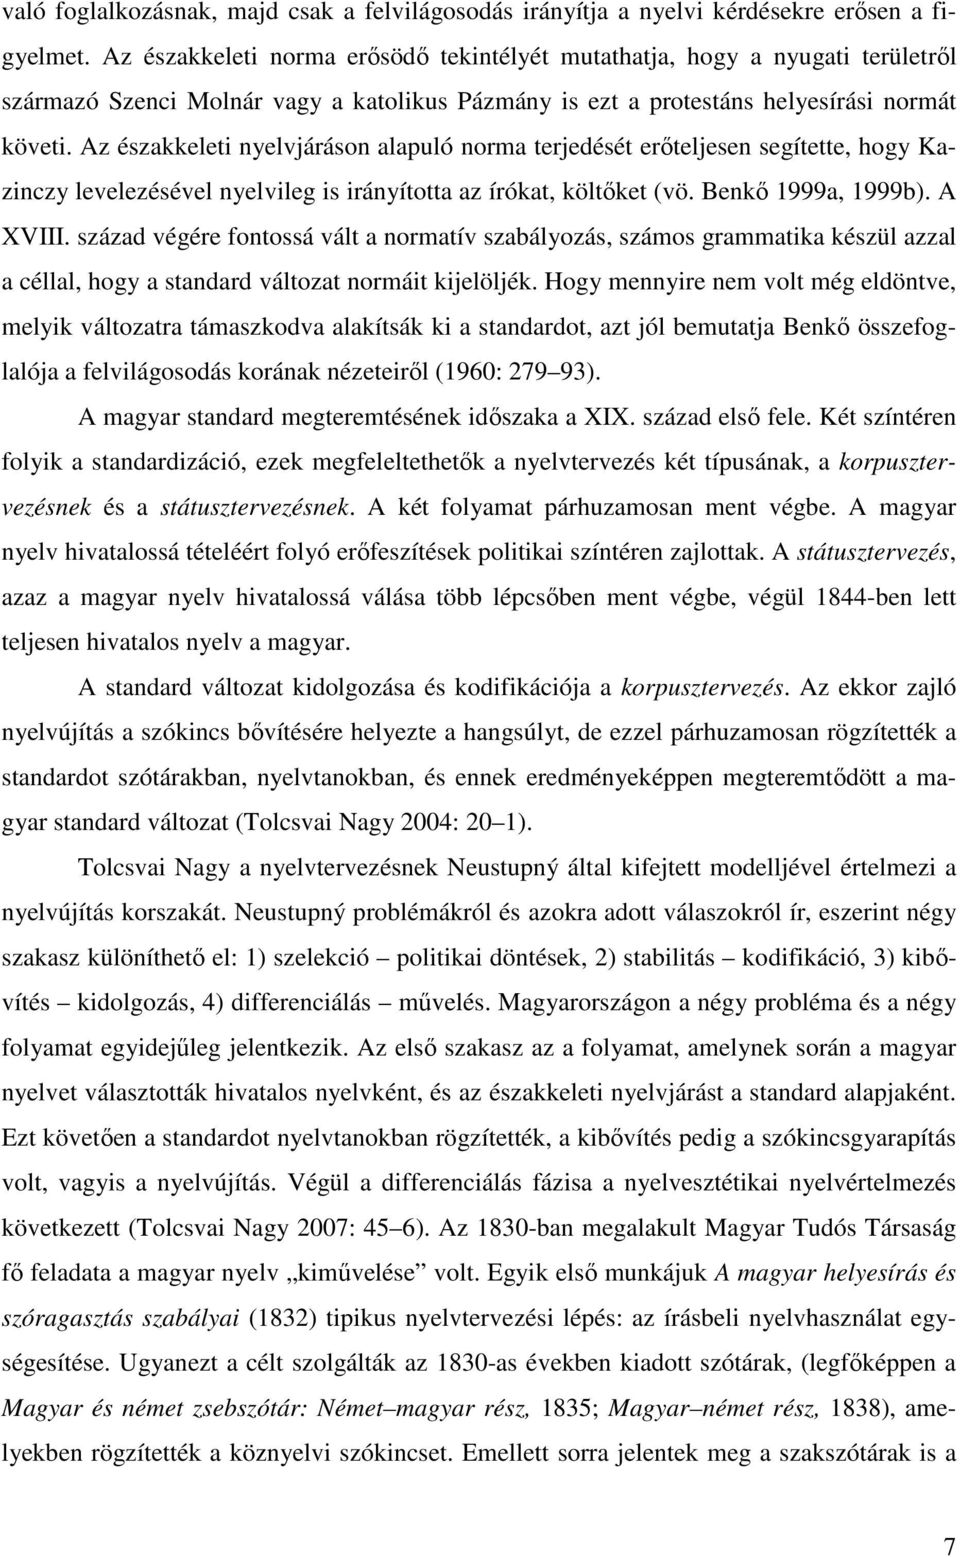 Az északkeleti nyelvjáráson alapuló norma terjedését erőteljesen segítette, hogy Kazinczy levelezésével nyelvileg is irányította az írókat, költőket (vö. Benkő 1999a, 1999b). A XVIII.